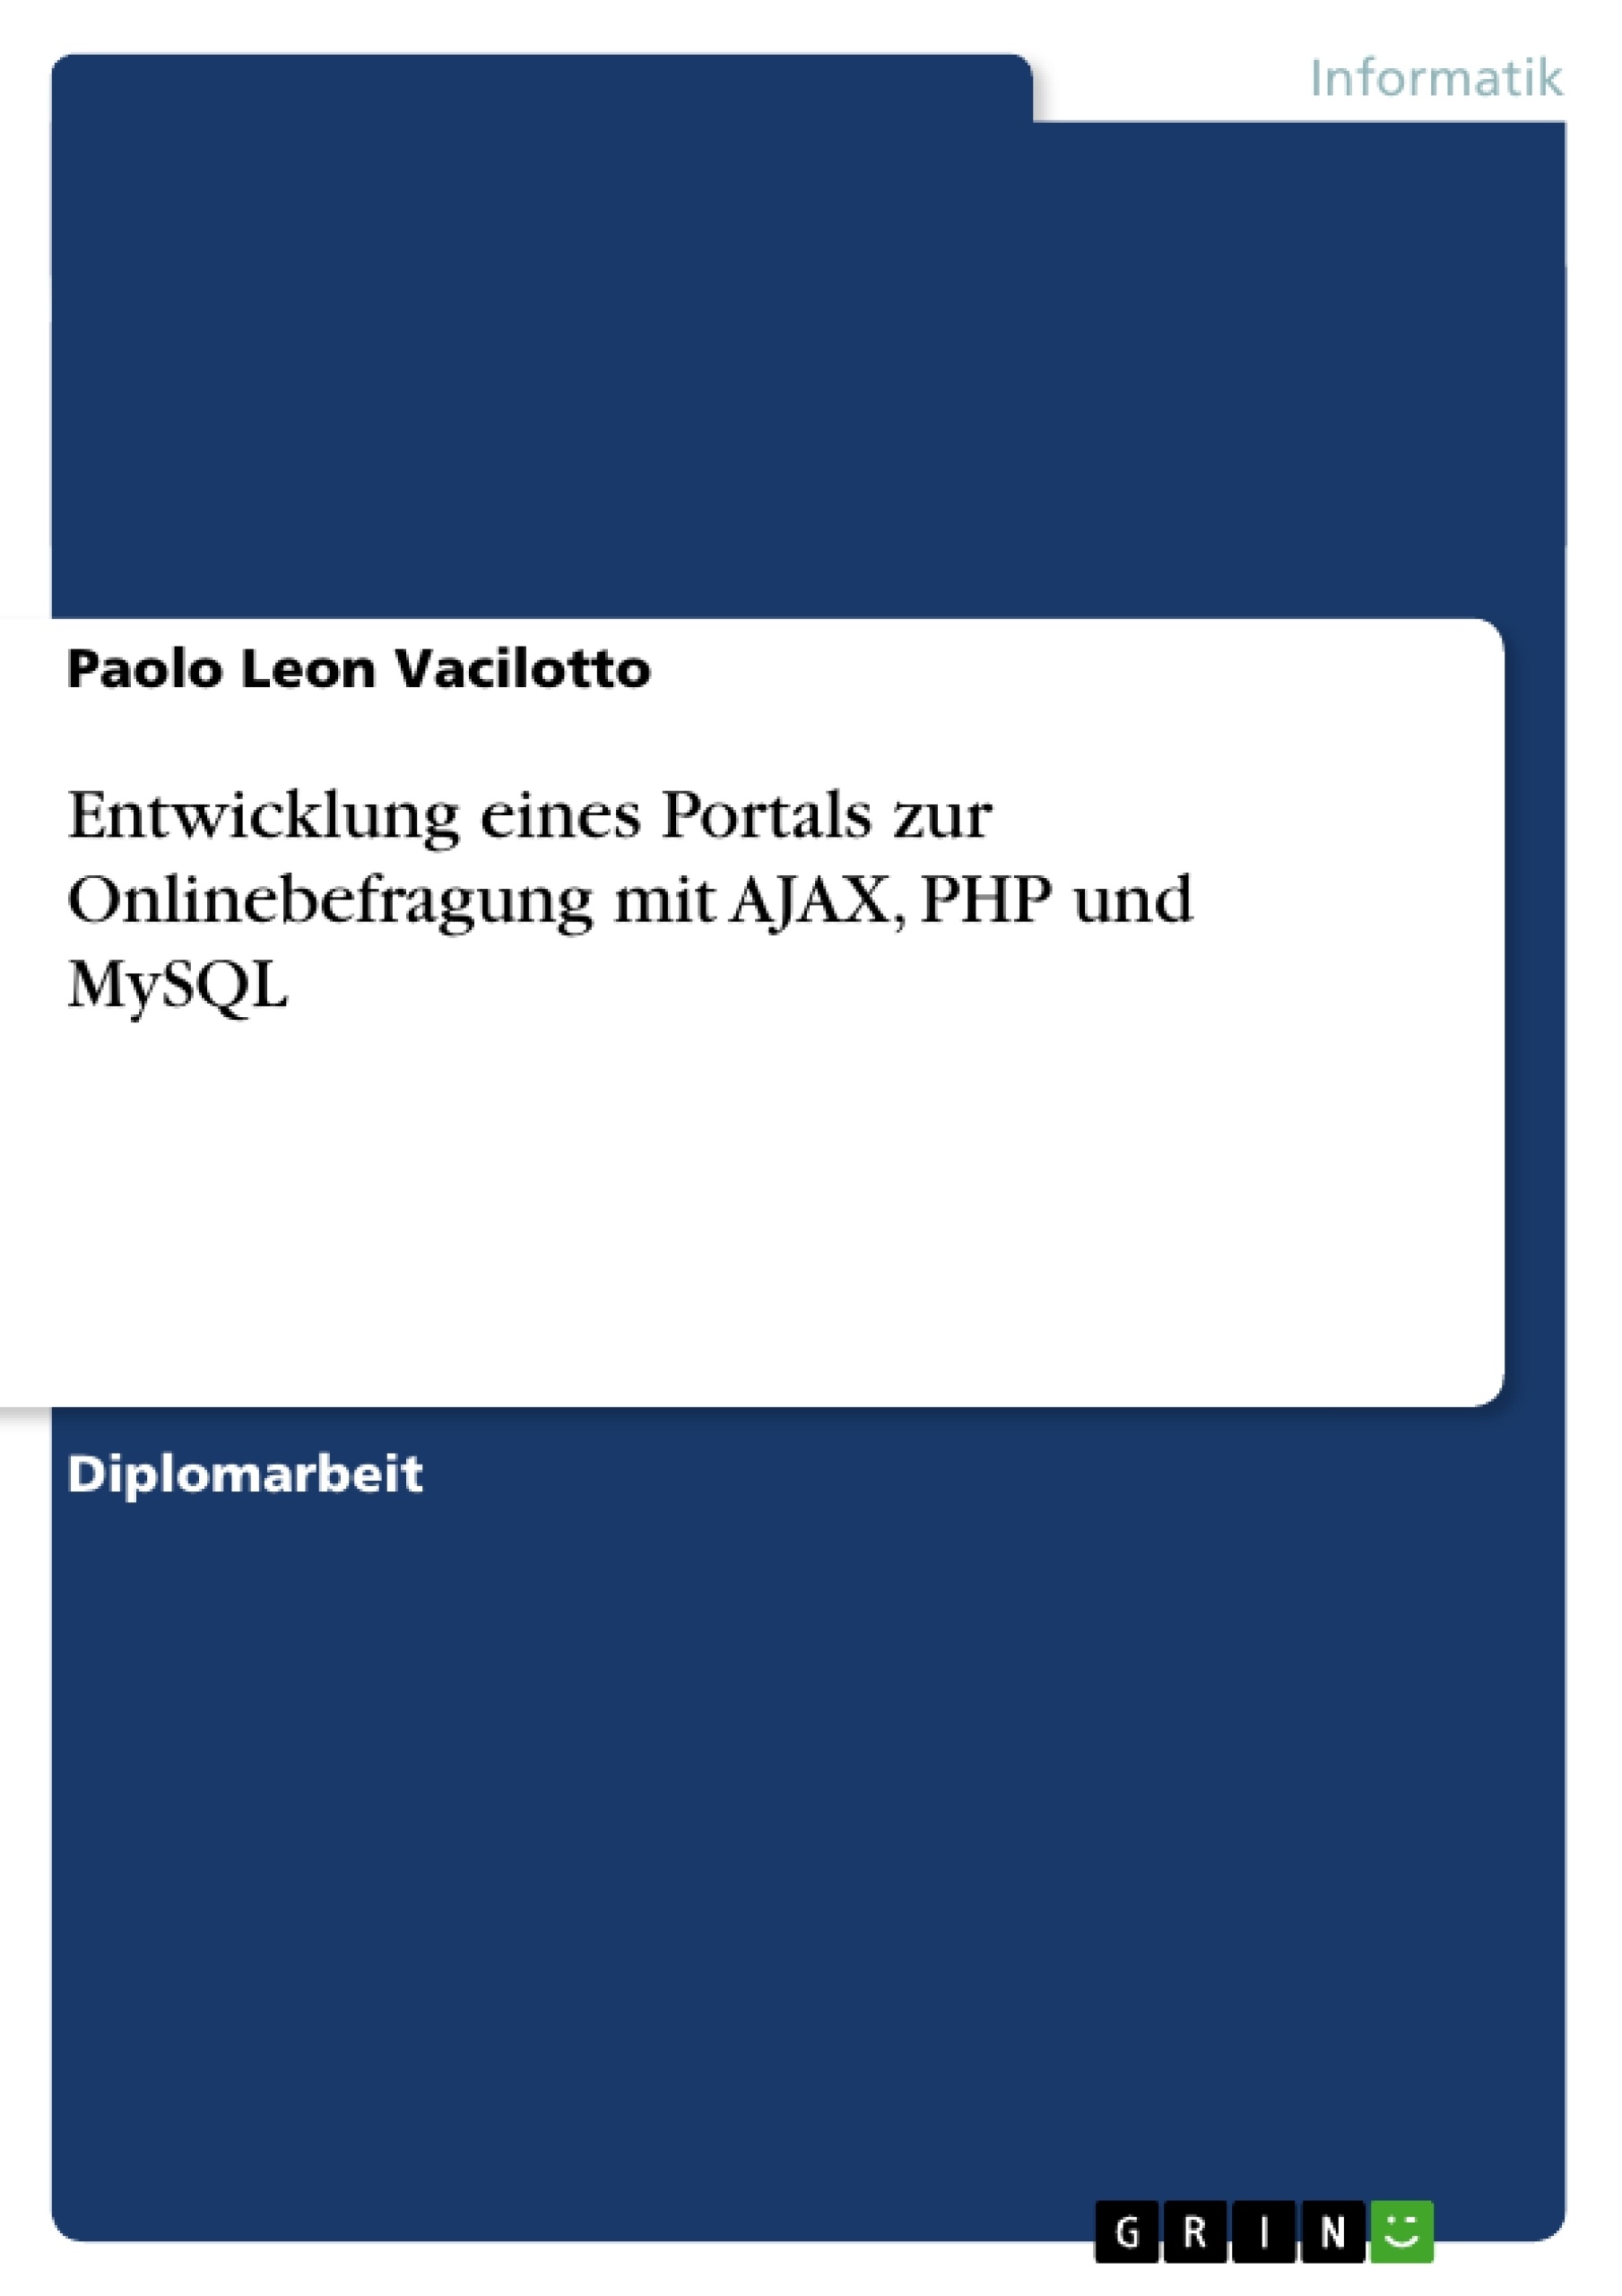 Título: Entwicklung eines Portals zur Onlinebefragung mit AJAX, PHP und MySQL